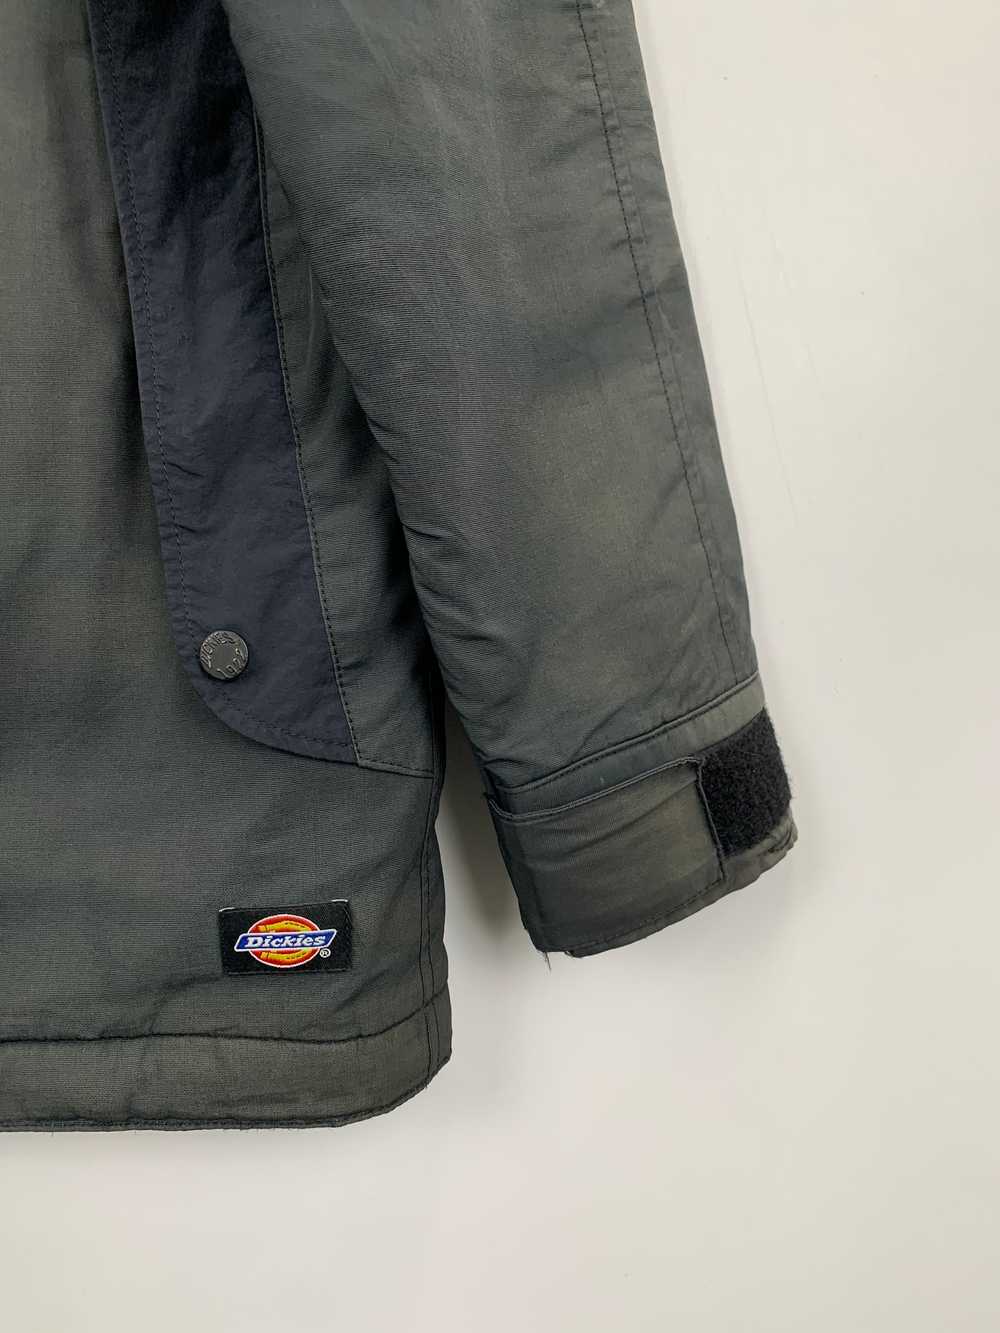 Vintage - Vintage Dickies Hoodie Faded Jacket - image 6